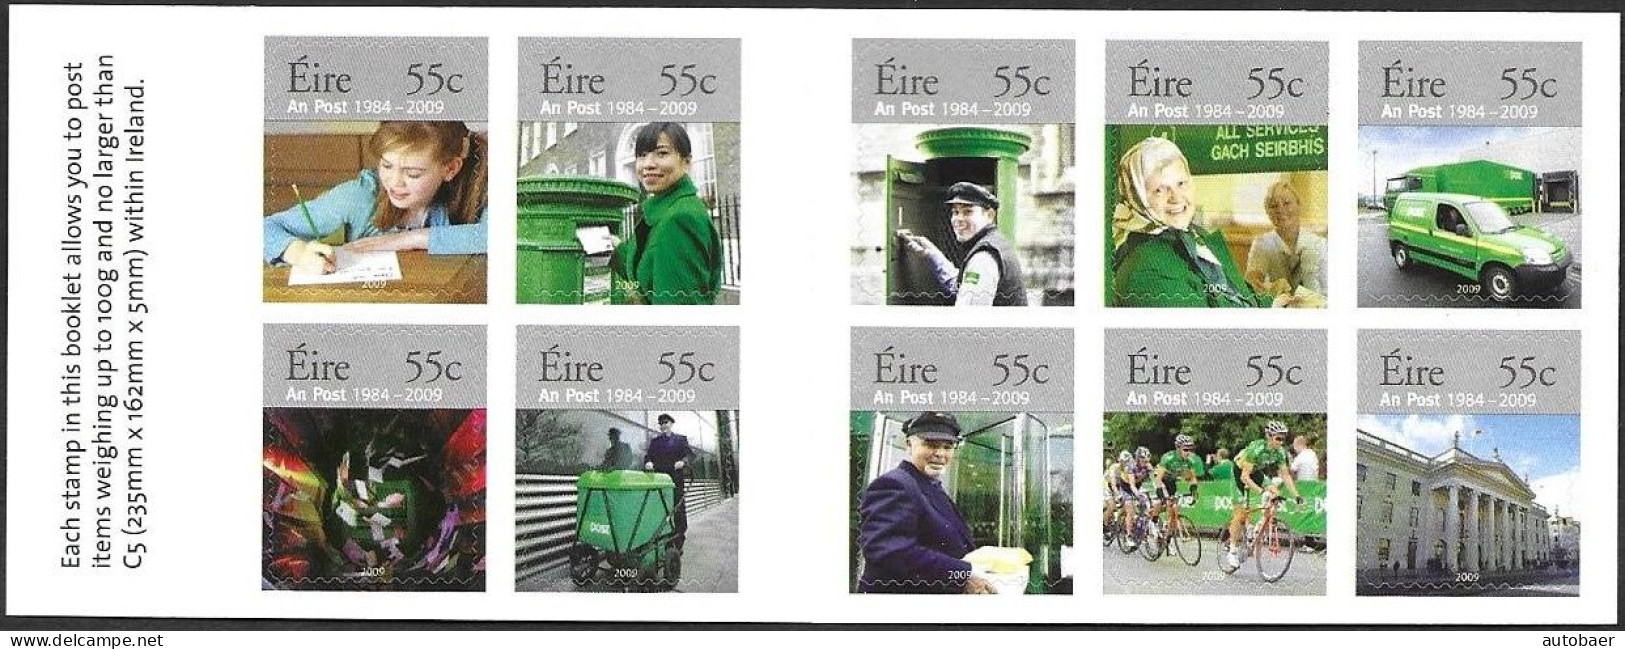 Irland Eire Ireland 2009 25 Years AN-Post Michel No 1866-75 Markenheftchen Carnet Booklet MNH Postfrisch Neuf ** - Libretti